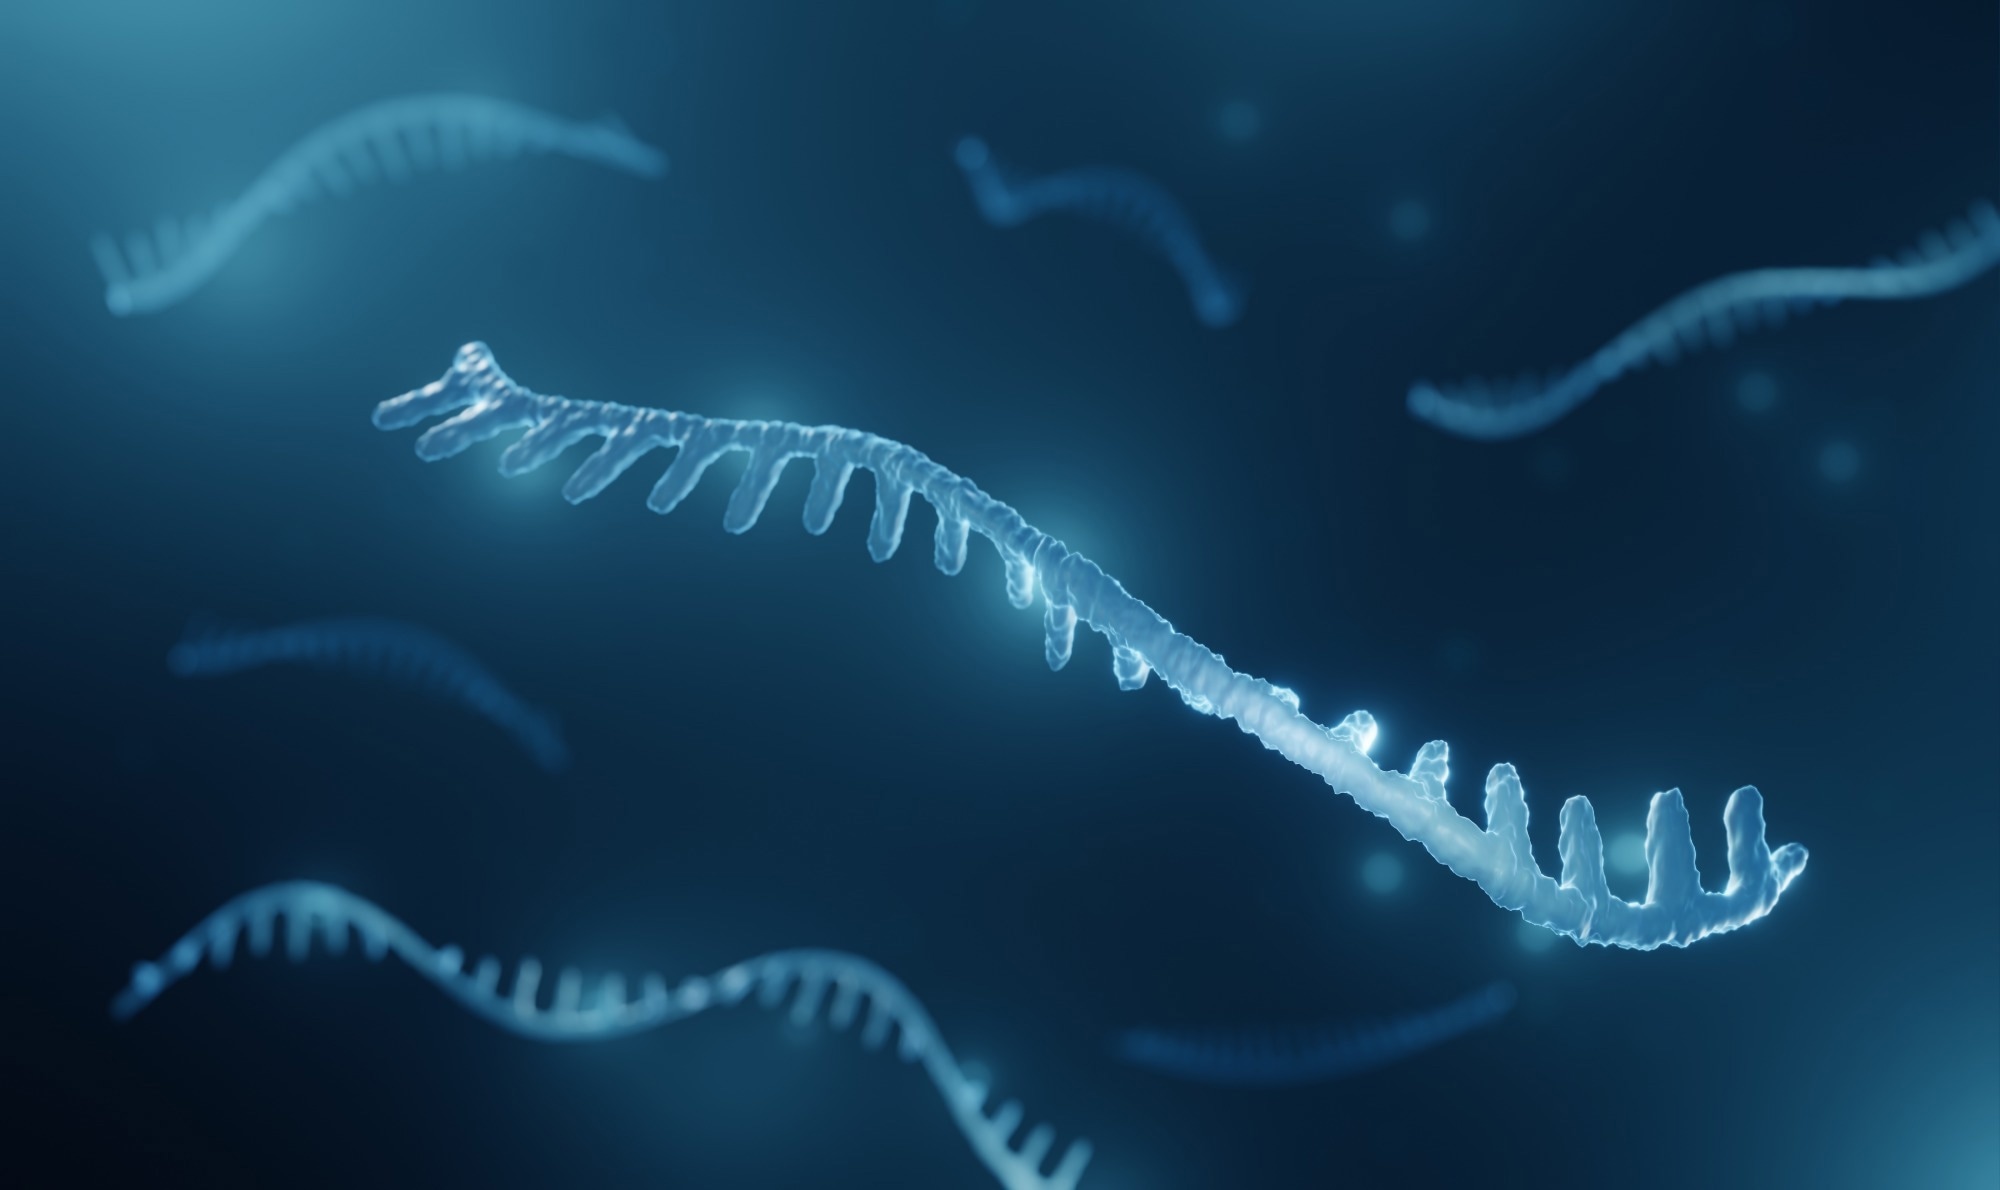 Studio: Modulatori epigenetici dietetici: svelare i benefici ancora controversi dei miRNA nella nutrizione e nelle malattie. Credito di immagine: ART-ur/Shutterstock.com